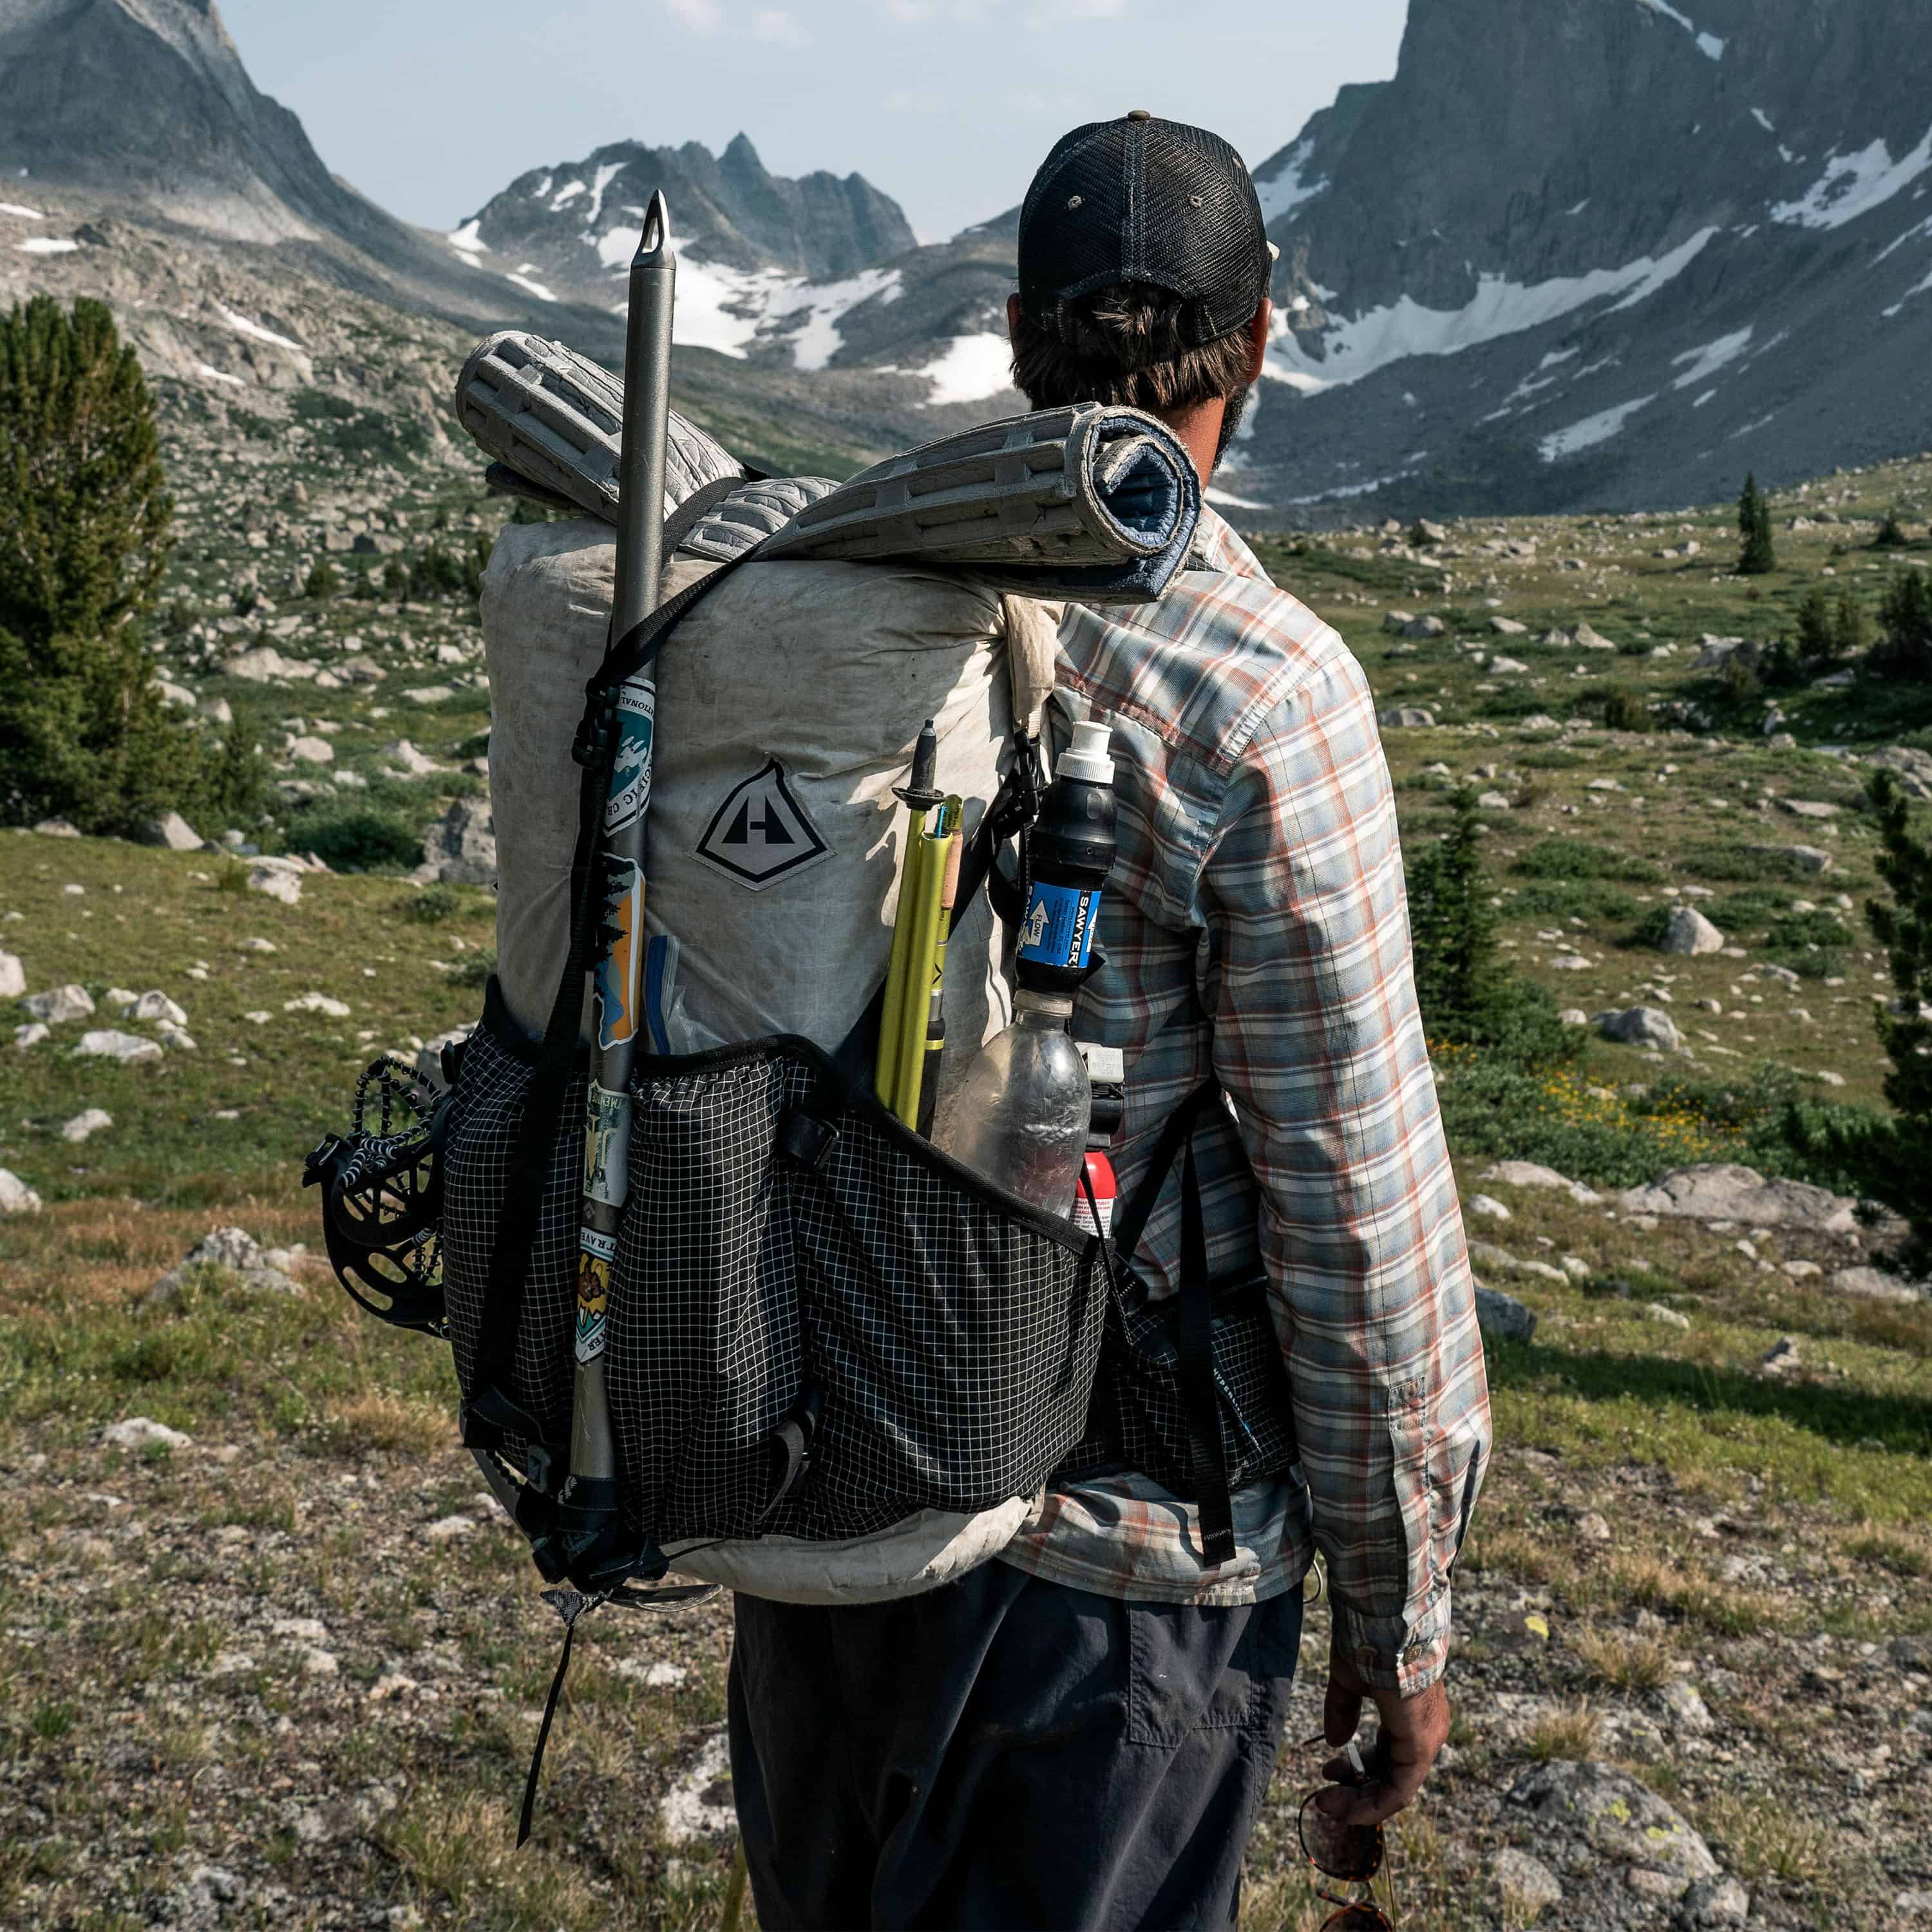 Hyperlite Mountain Gear Southwest 55, 55L Ultralight Backpack